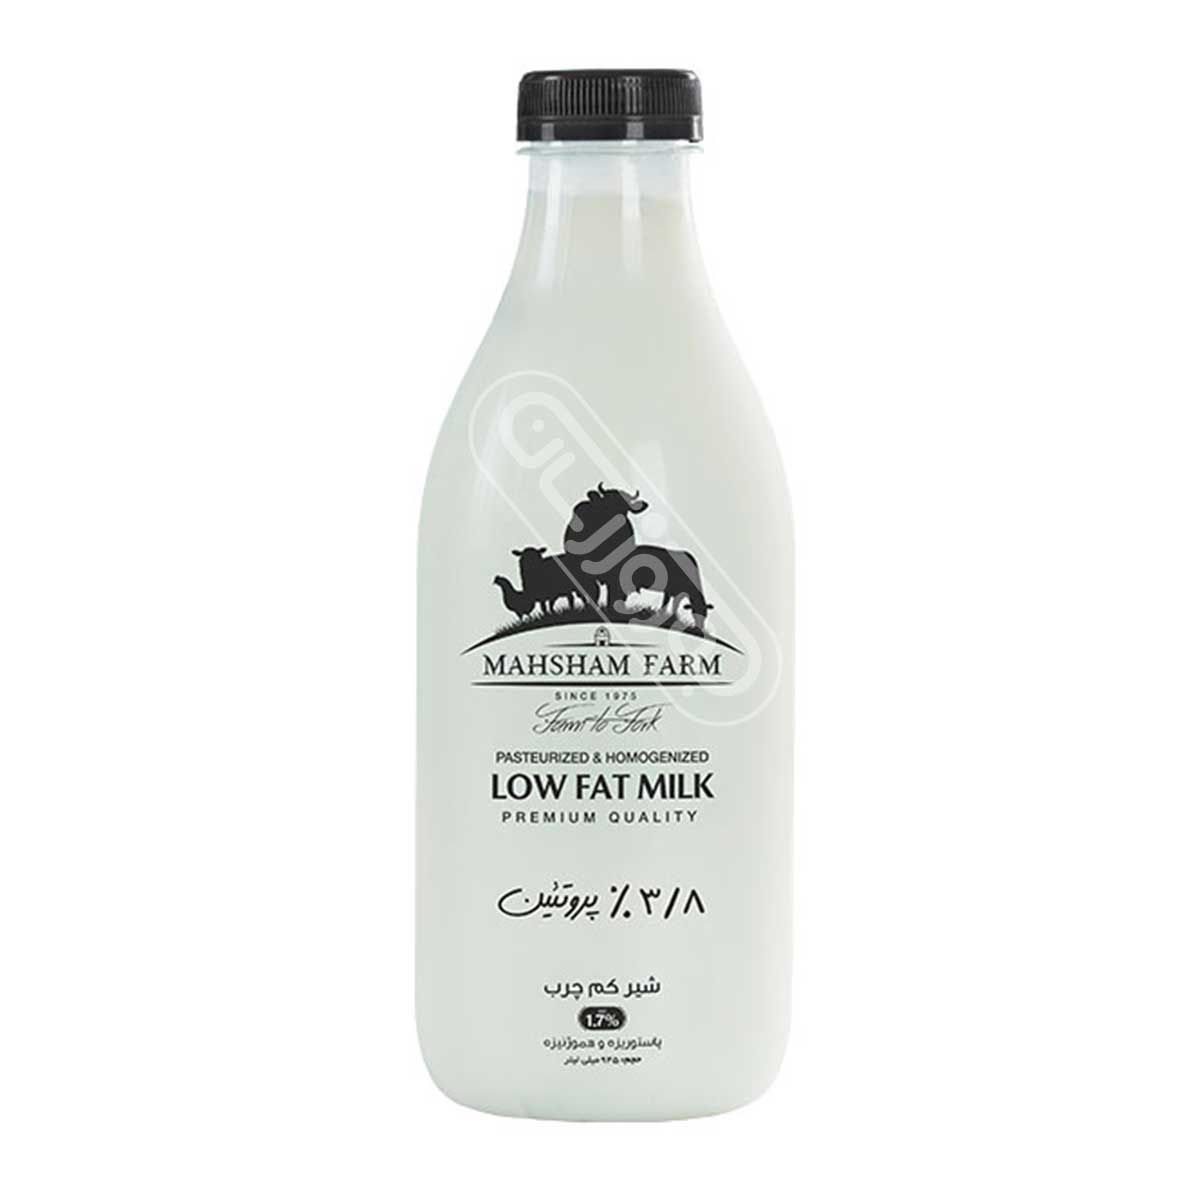 شیر کم چرب ویژه مزرعه ماهشام 945 سی سی - مدت ماندگاری 4 روز